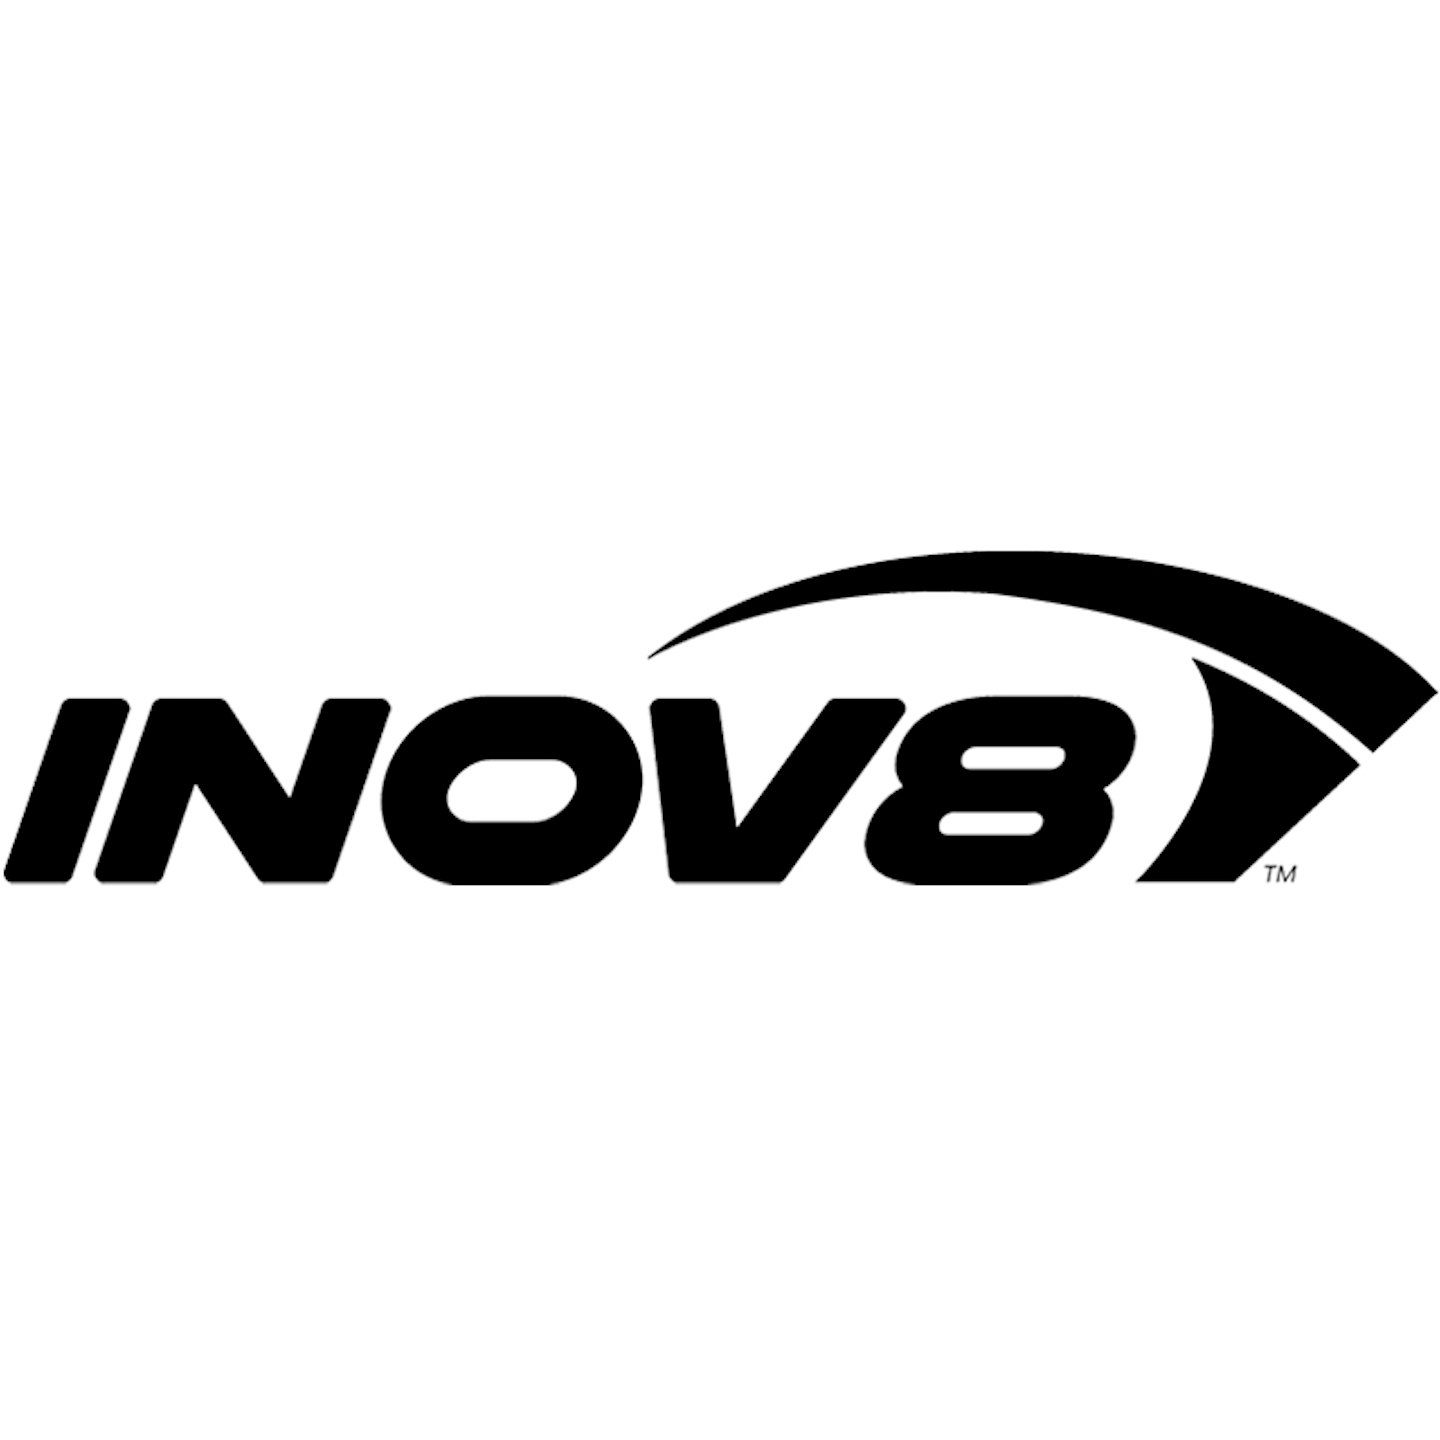 INOV8 logo